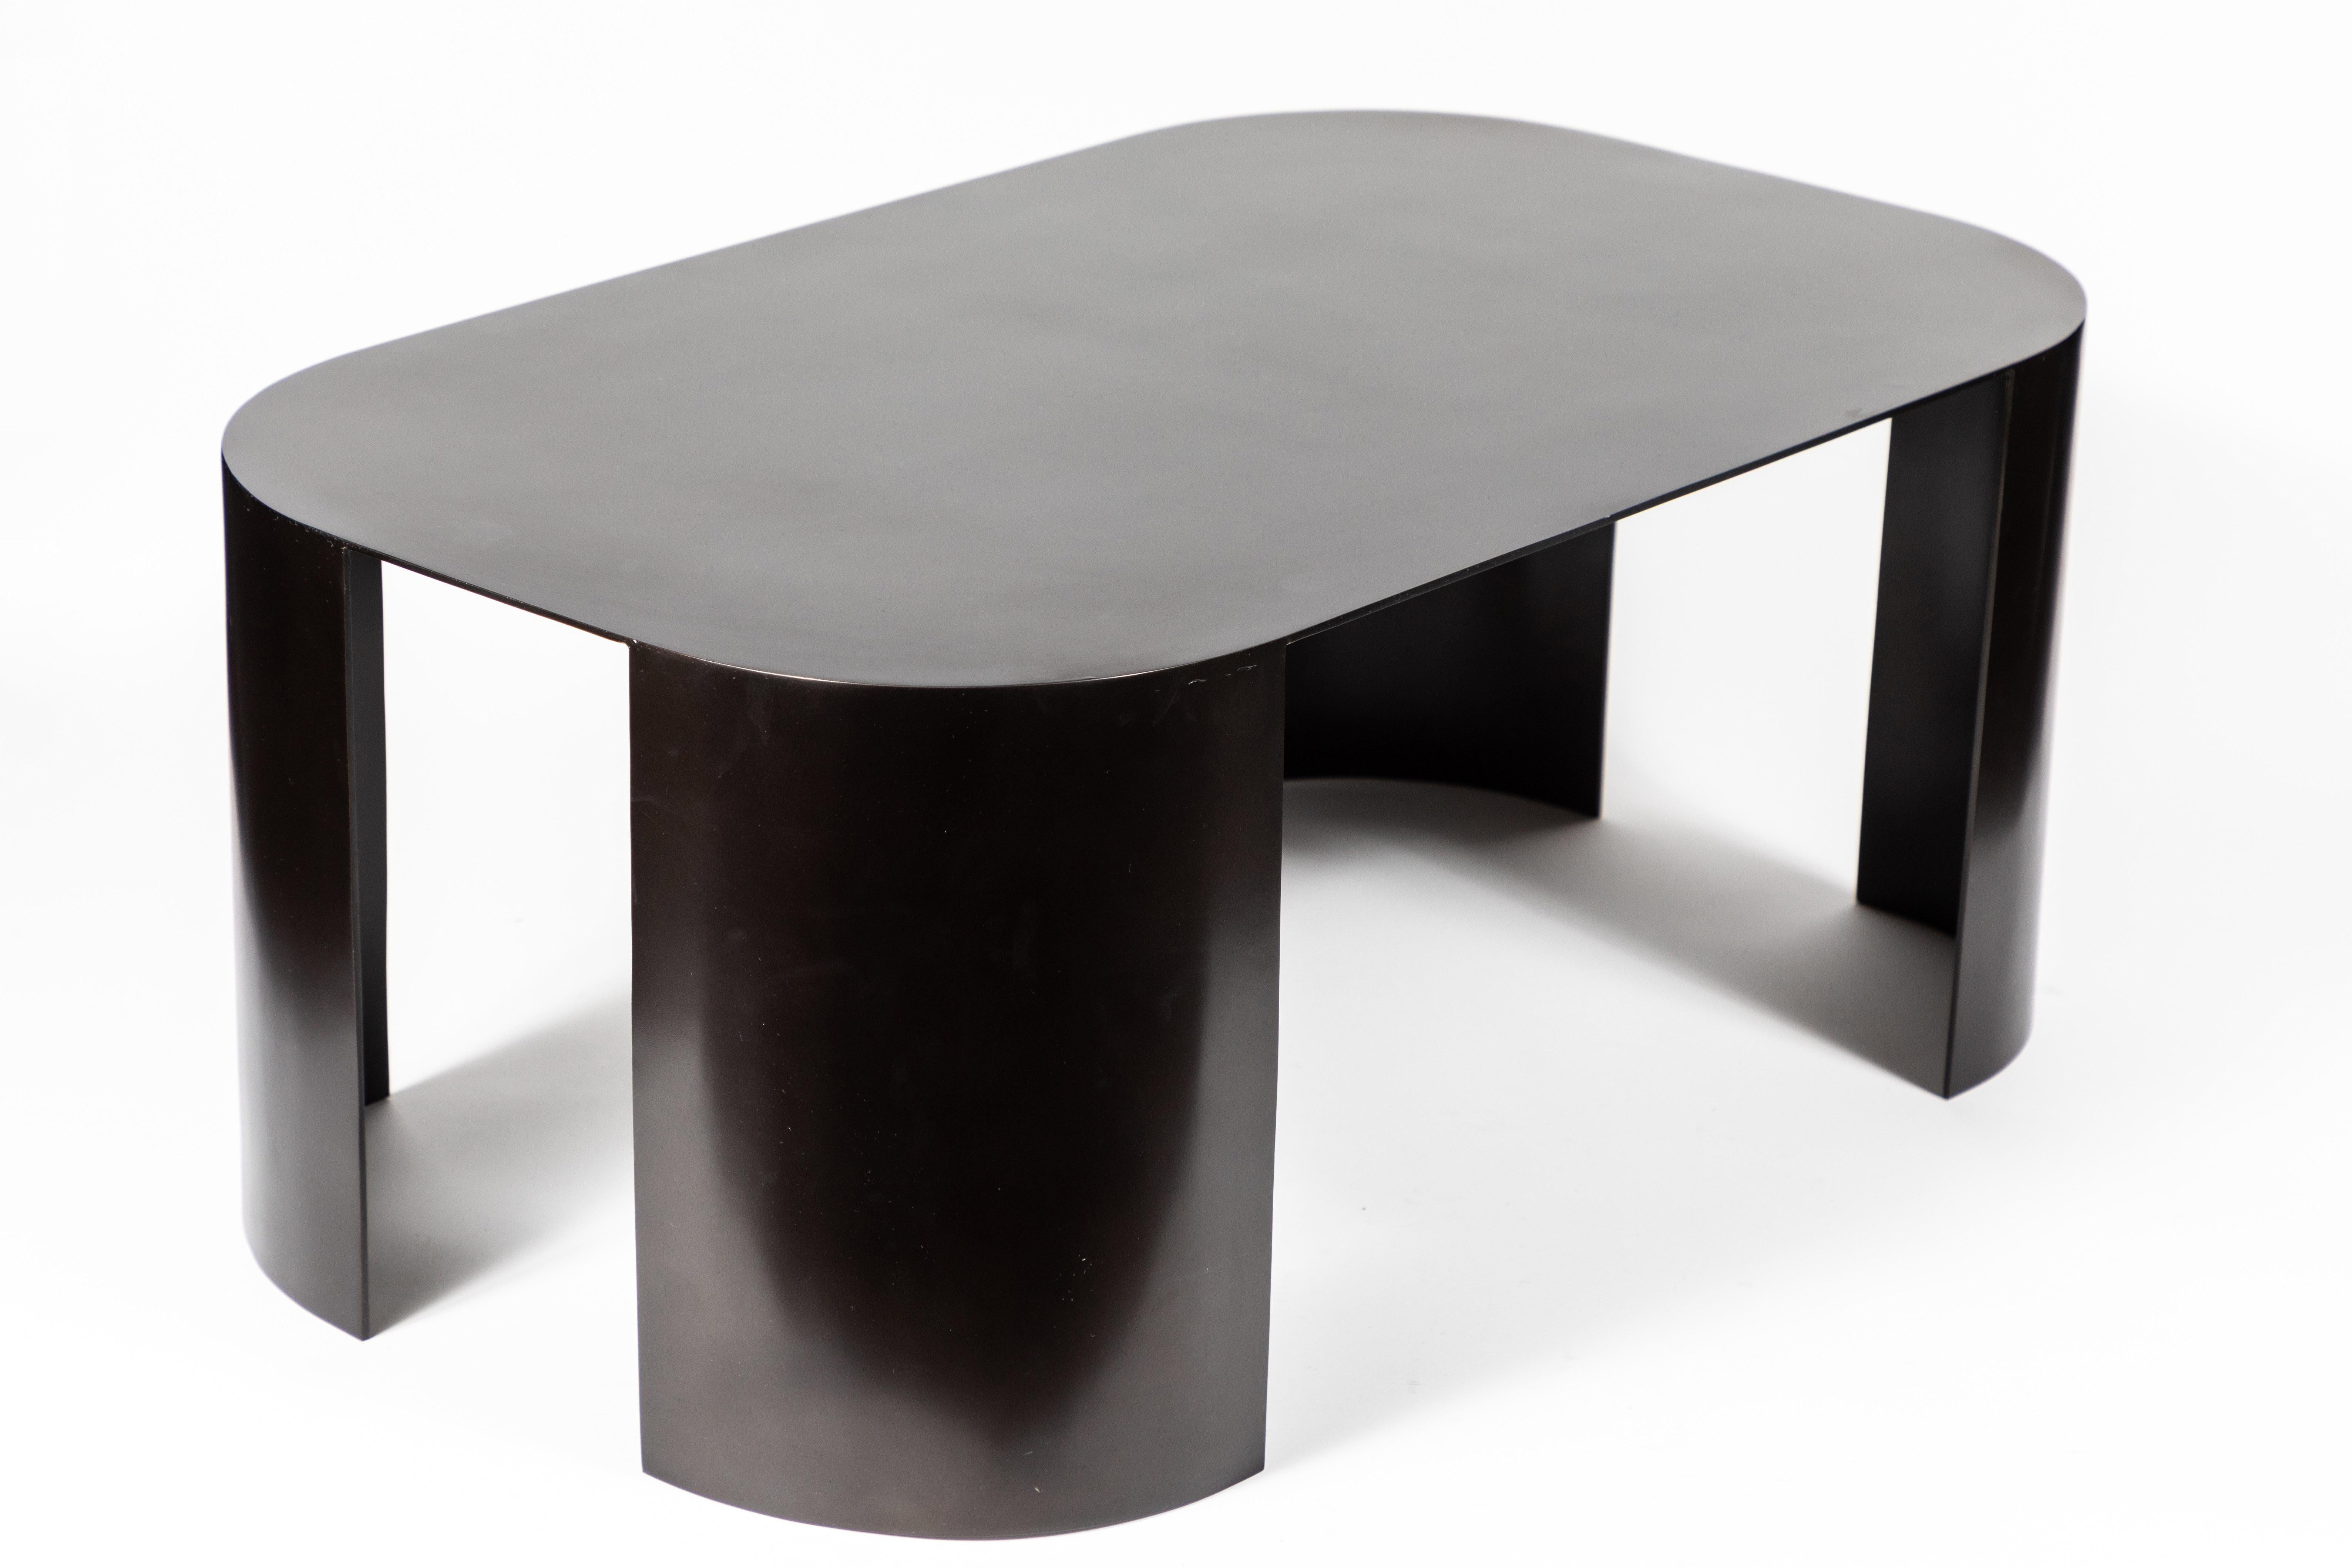 Schöner Couchtisch aus bronziertem Stahl in der Art von Karl Springer. Die klaren Linien und die Größe des Tisches machen ihn zu einem vielseitigen Möbelstück für viele Räume.